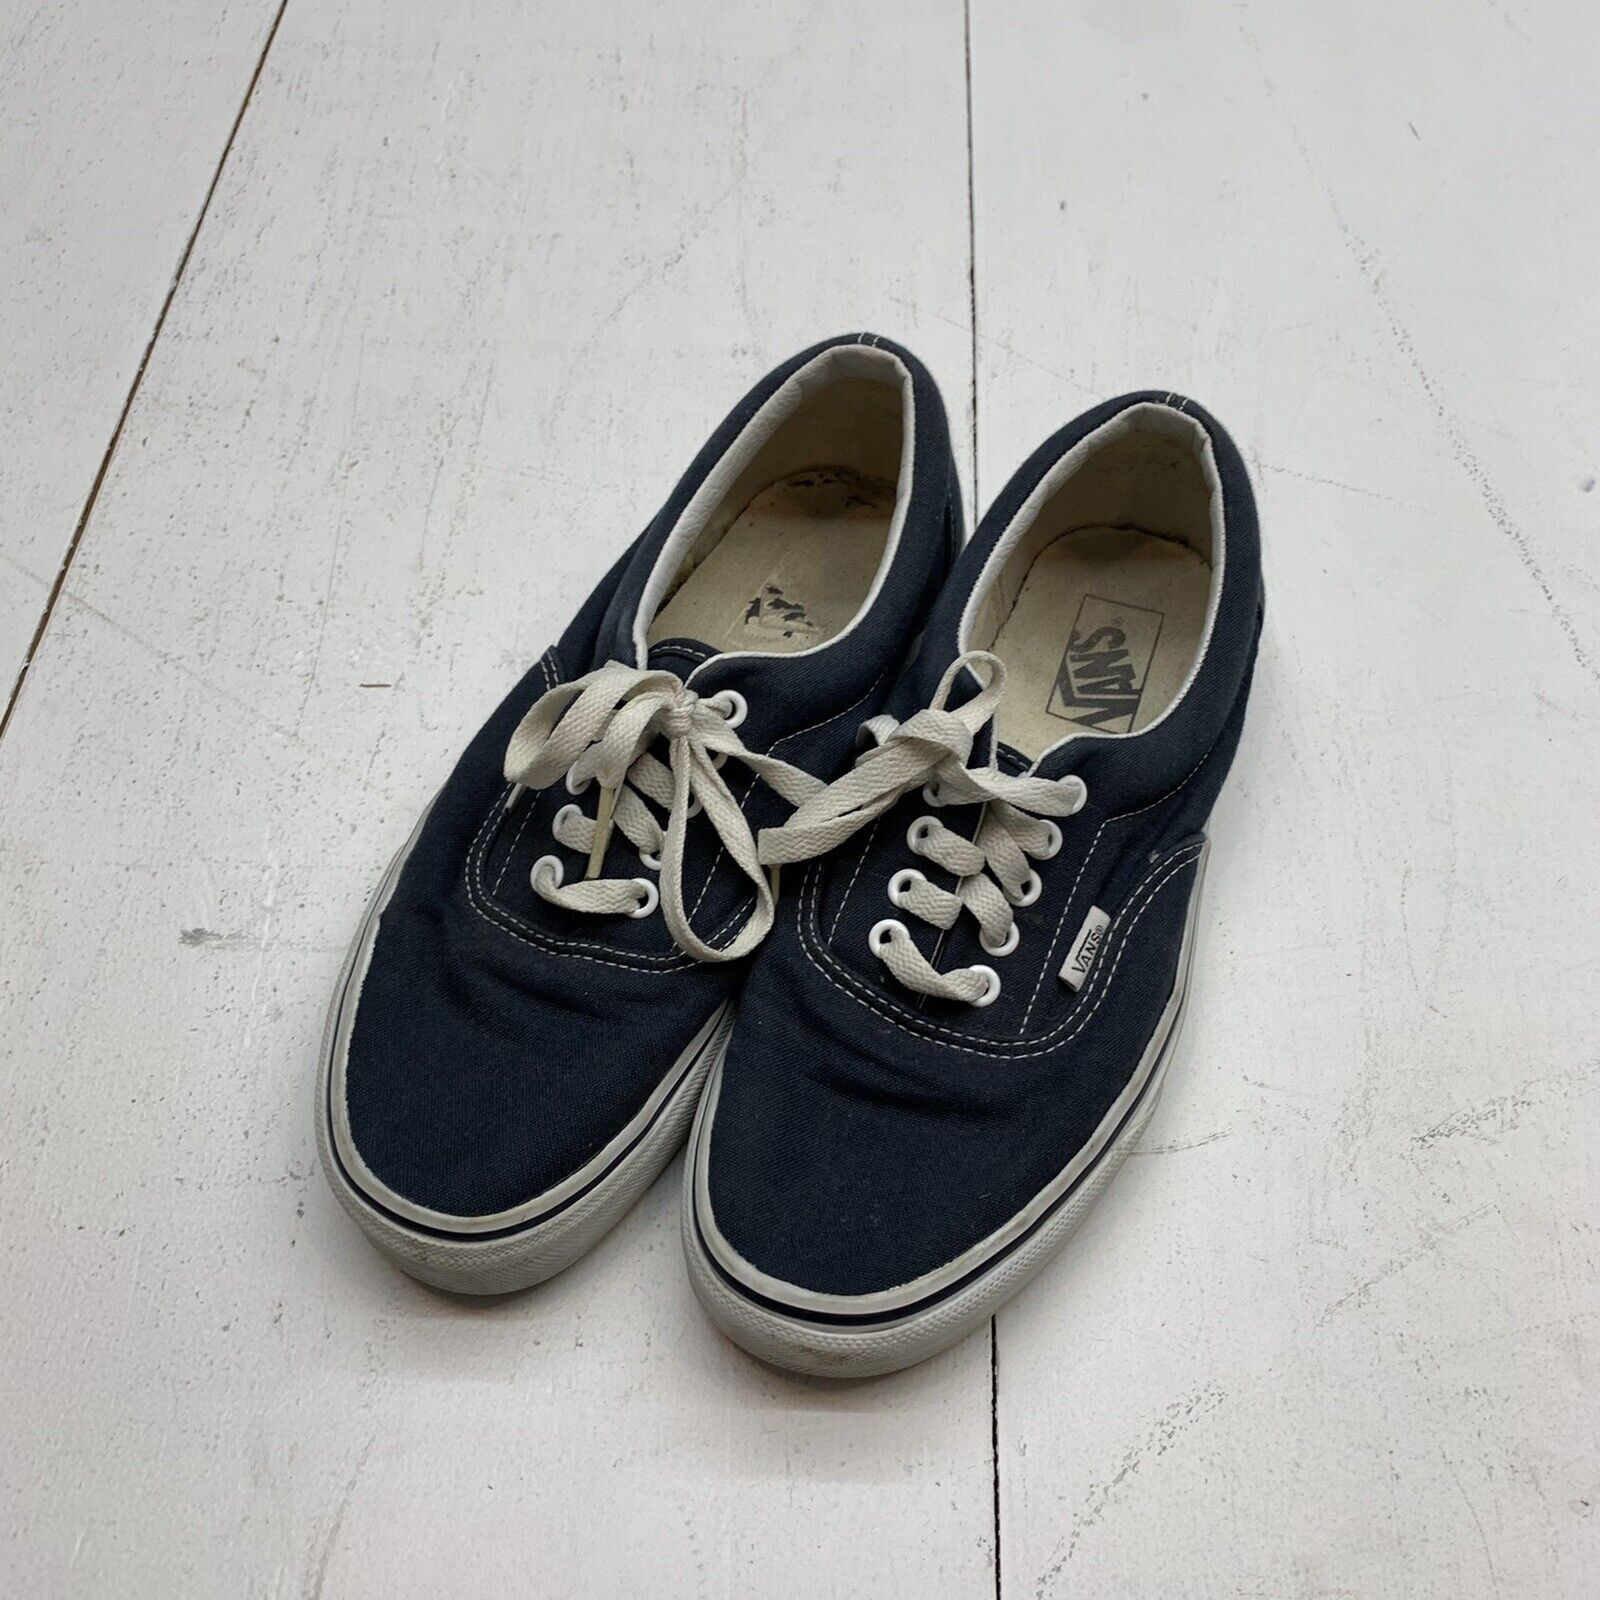 abortus zwaan zuiden Vans Era Men Skate Shoes Navy Blue Low Size 8.5 Sneakers - beyond exchange